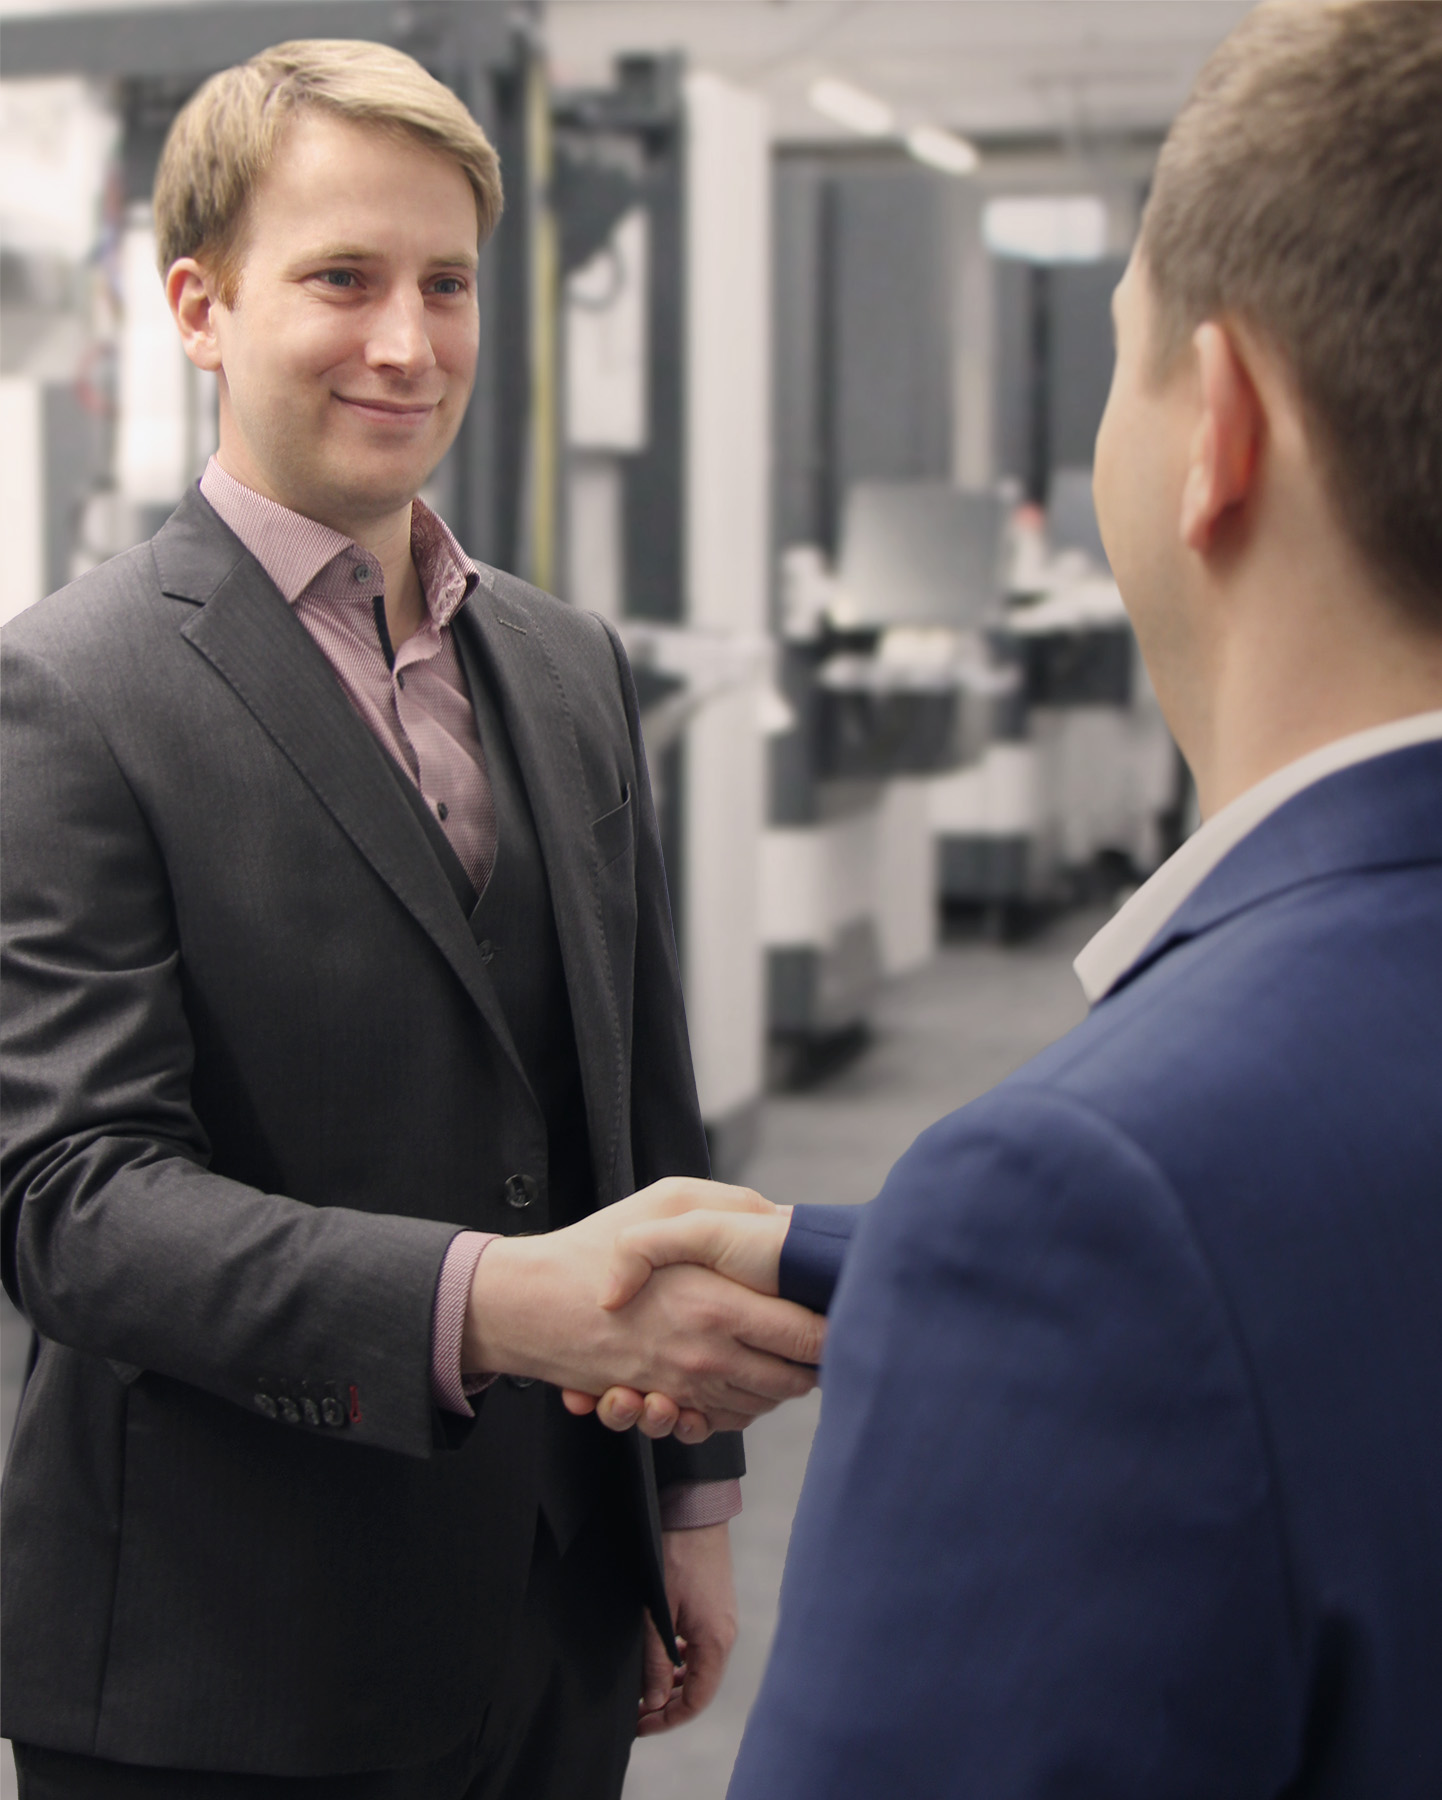 „Für uns startet eine vertrauensvolle Zusammenarbeit ab dem ersten Kundenkontakt.“ – Matthias Giray, Gebietsverkaufsleiter bei ROBOWORKER (links im Bild)